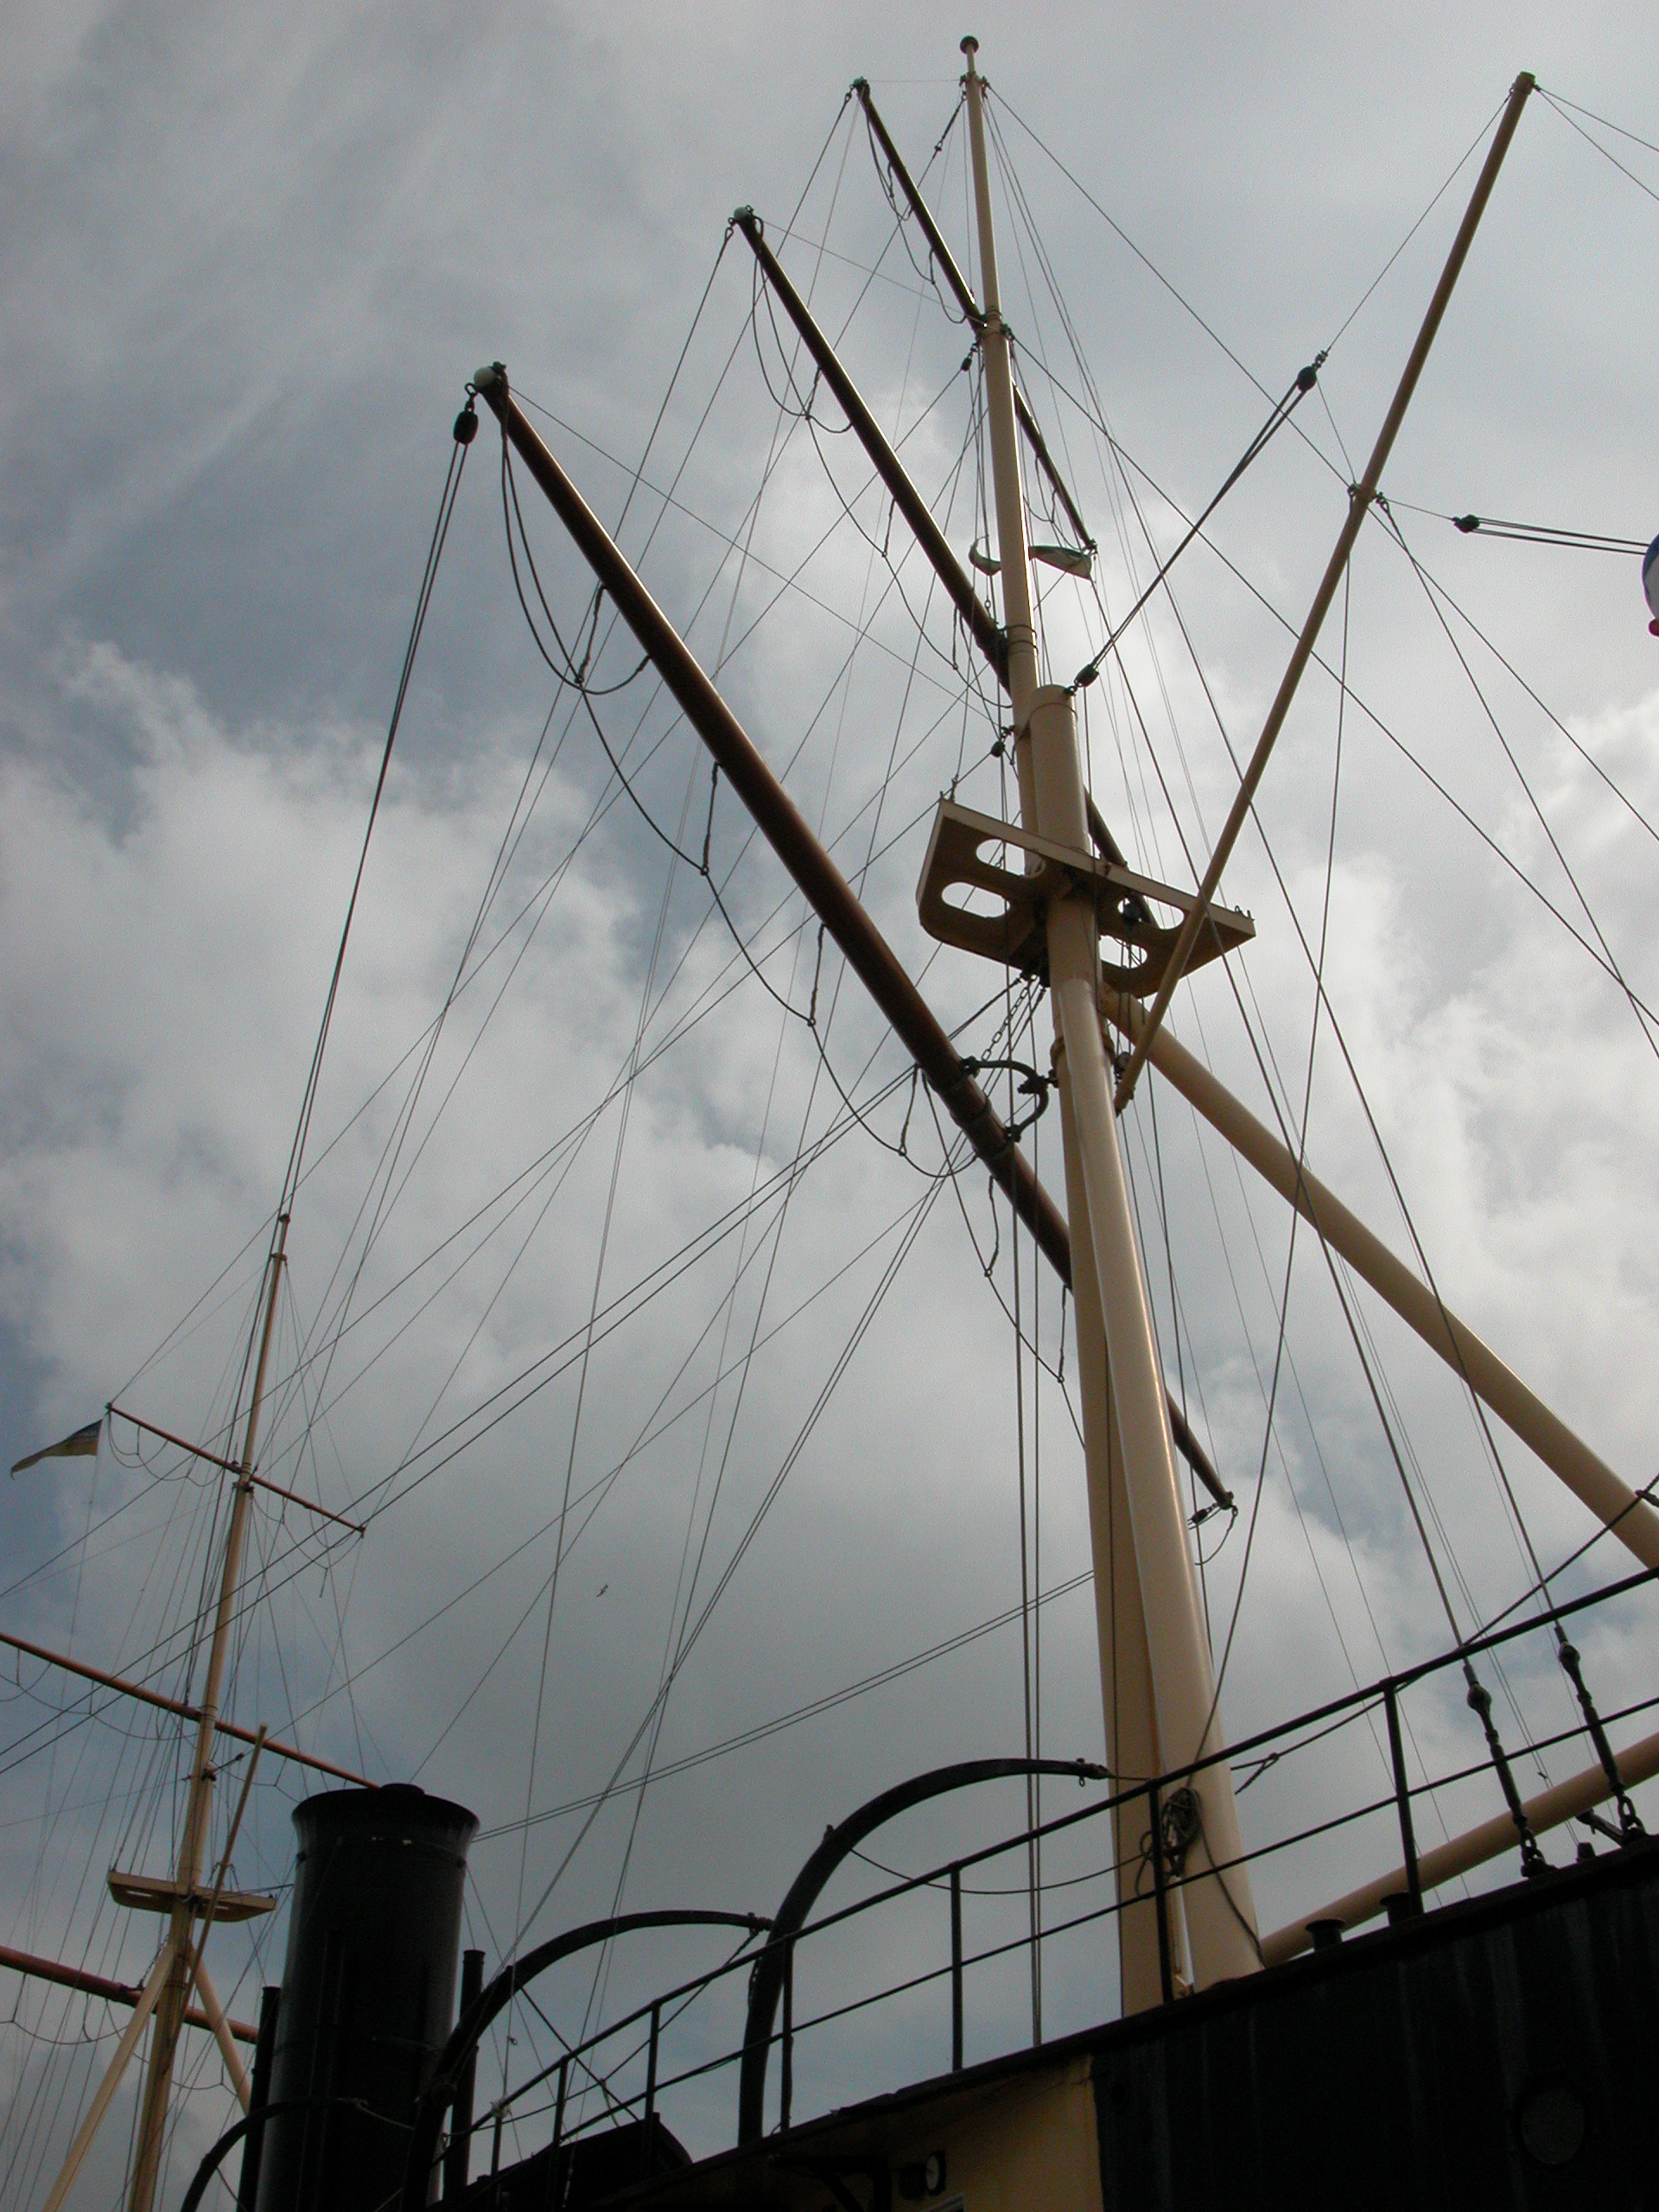 mast rigging ship boat sailing high royalty free